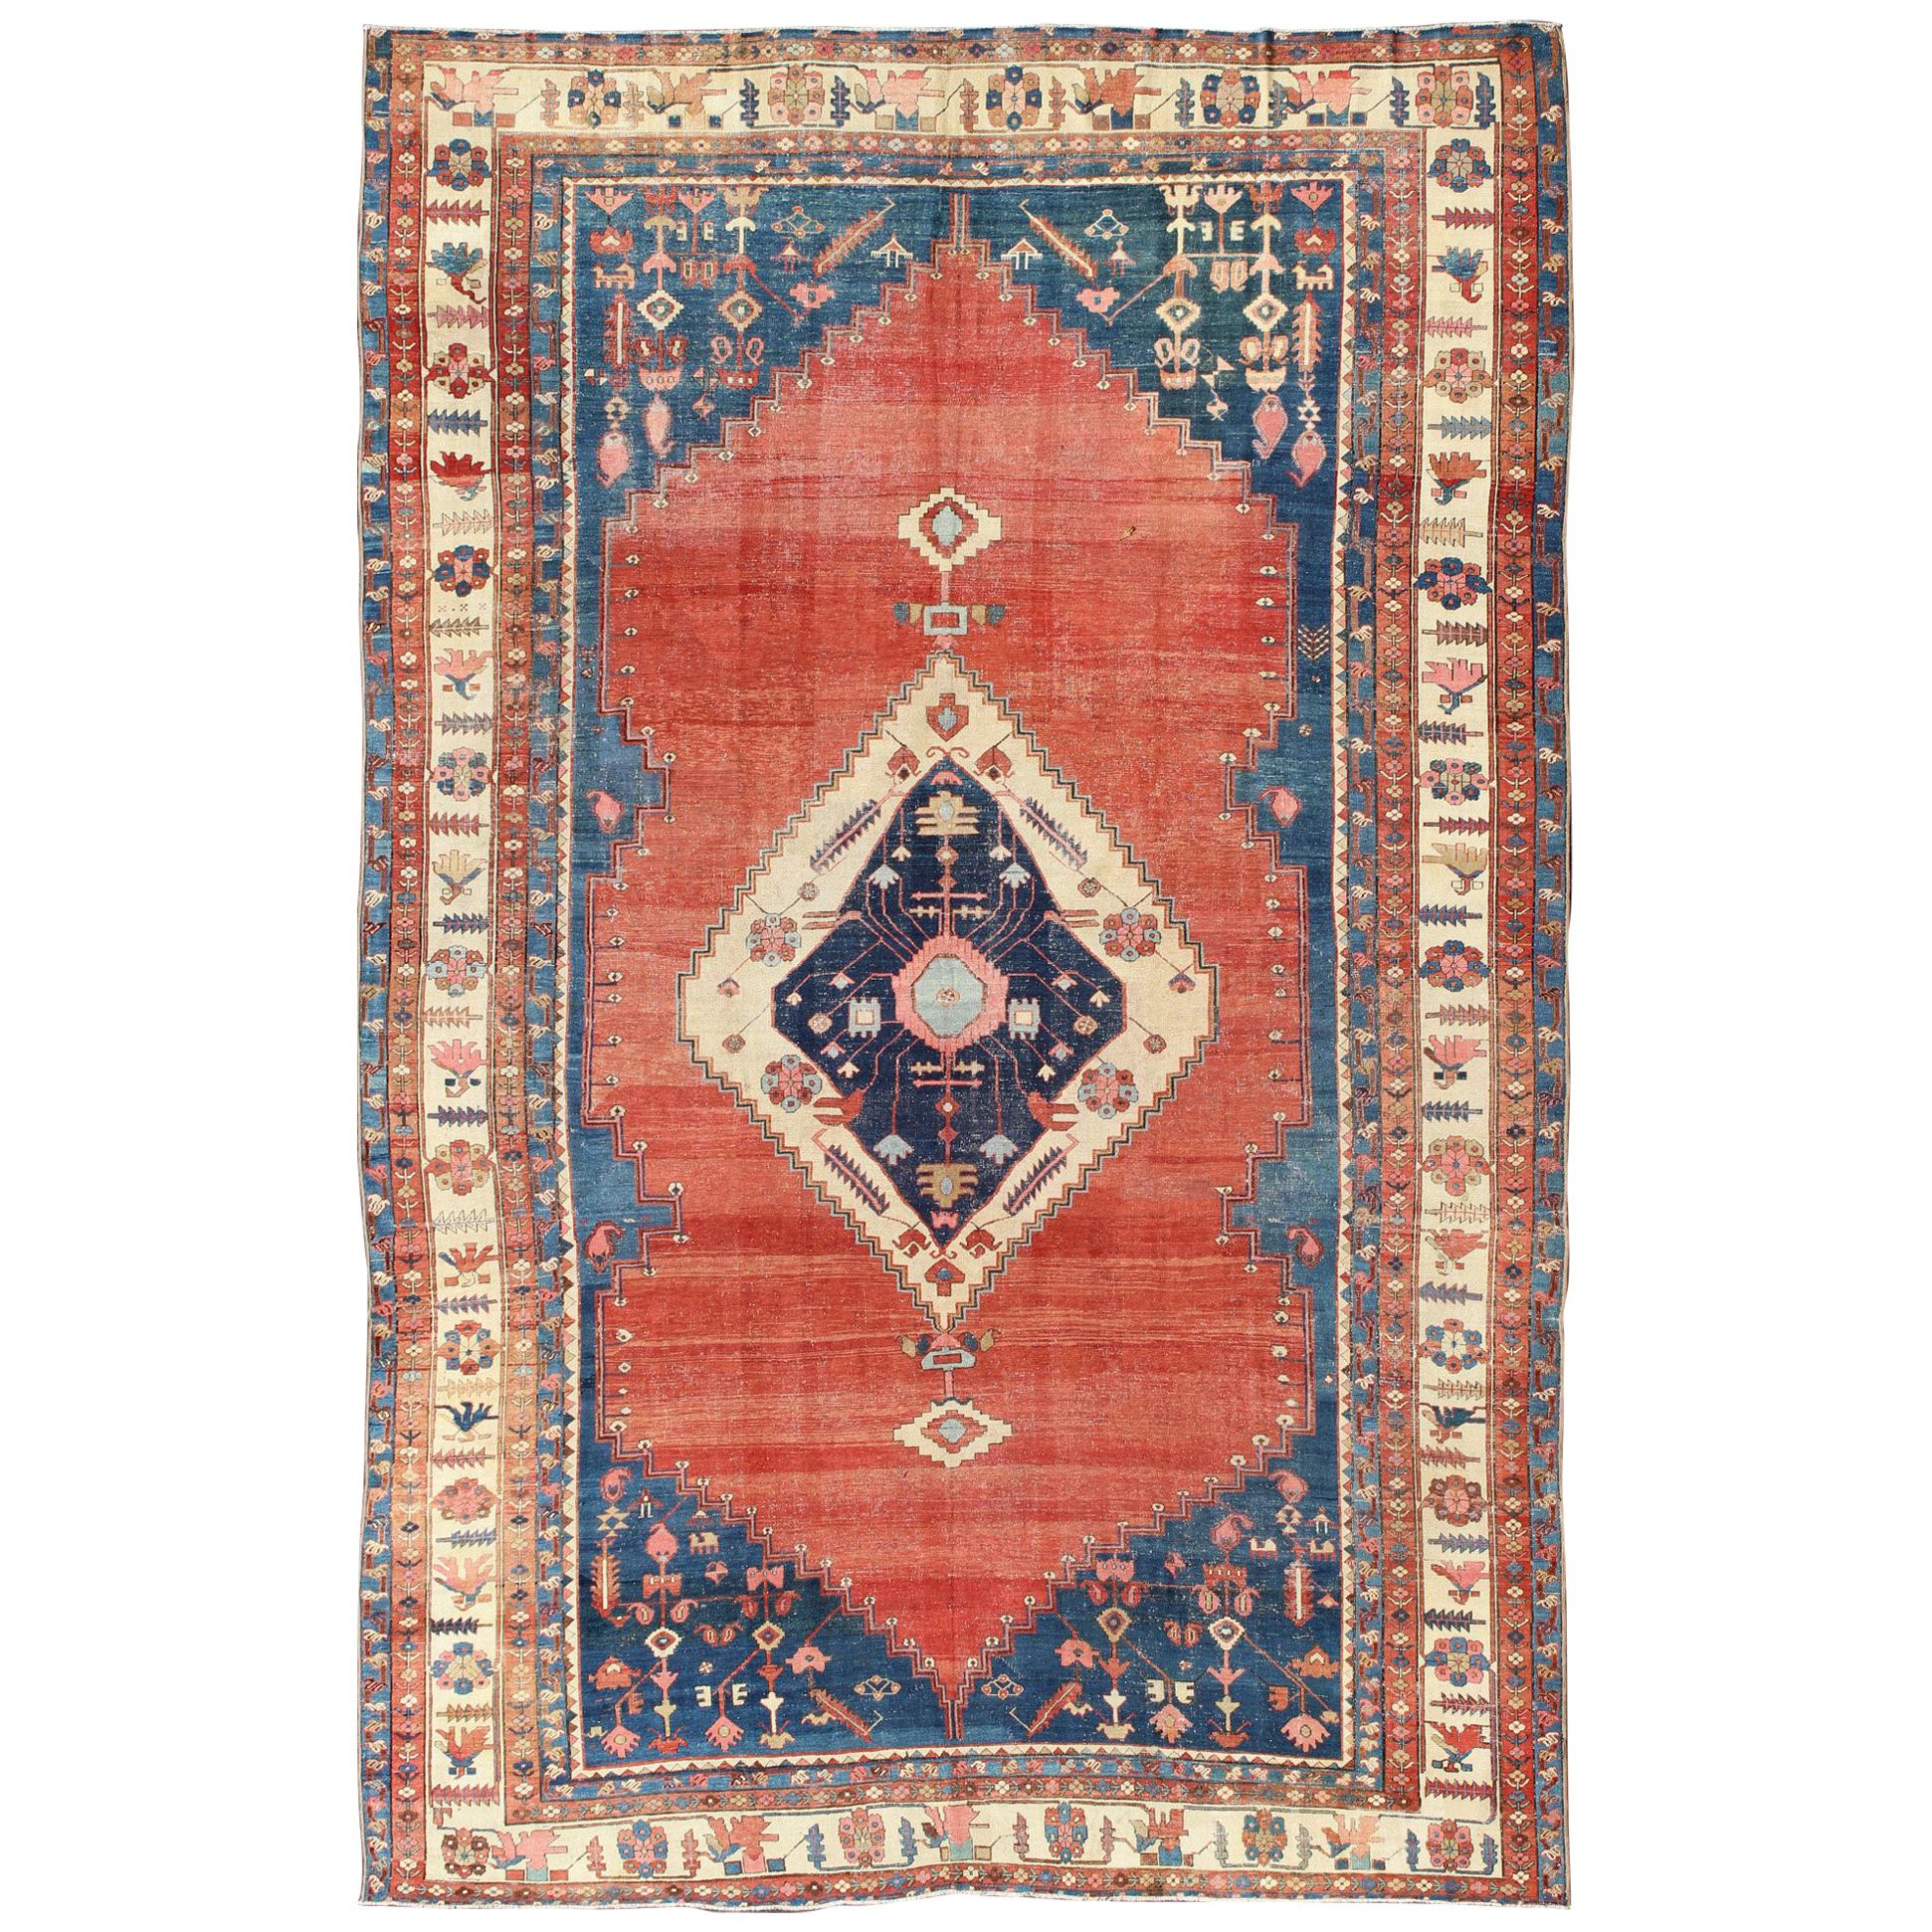 Fein gewebter antiker persischer Bakhshaiesh-Teppich aus dem 19. Jahrhundert in Rostrot und Blau